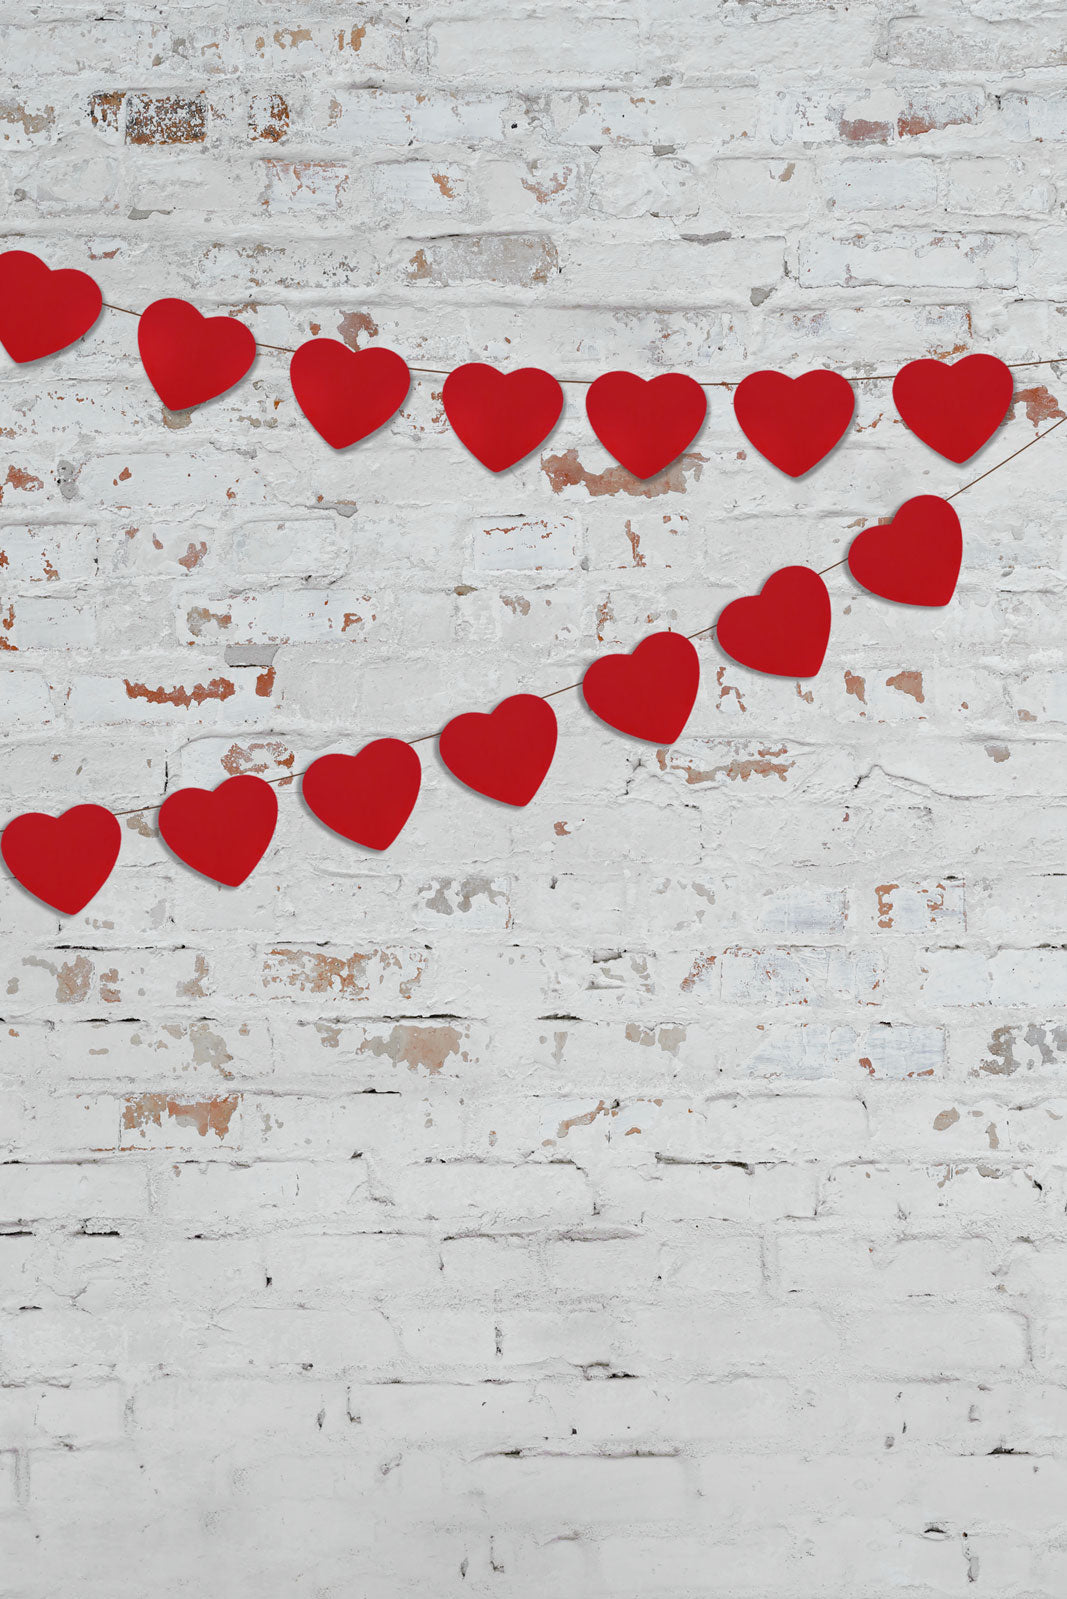 Kate Retro Backstein Valentine Background Entworfen von Jerry_Sina